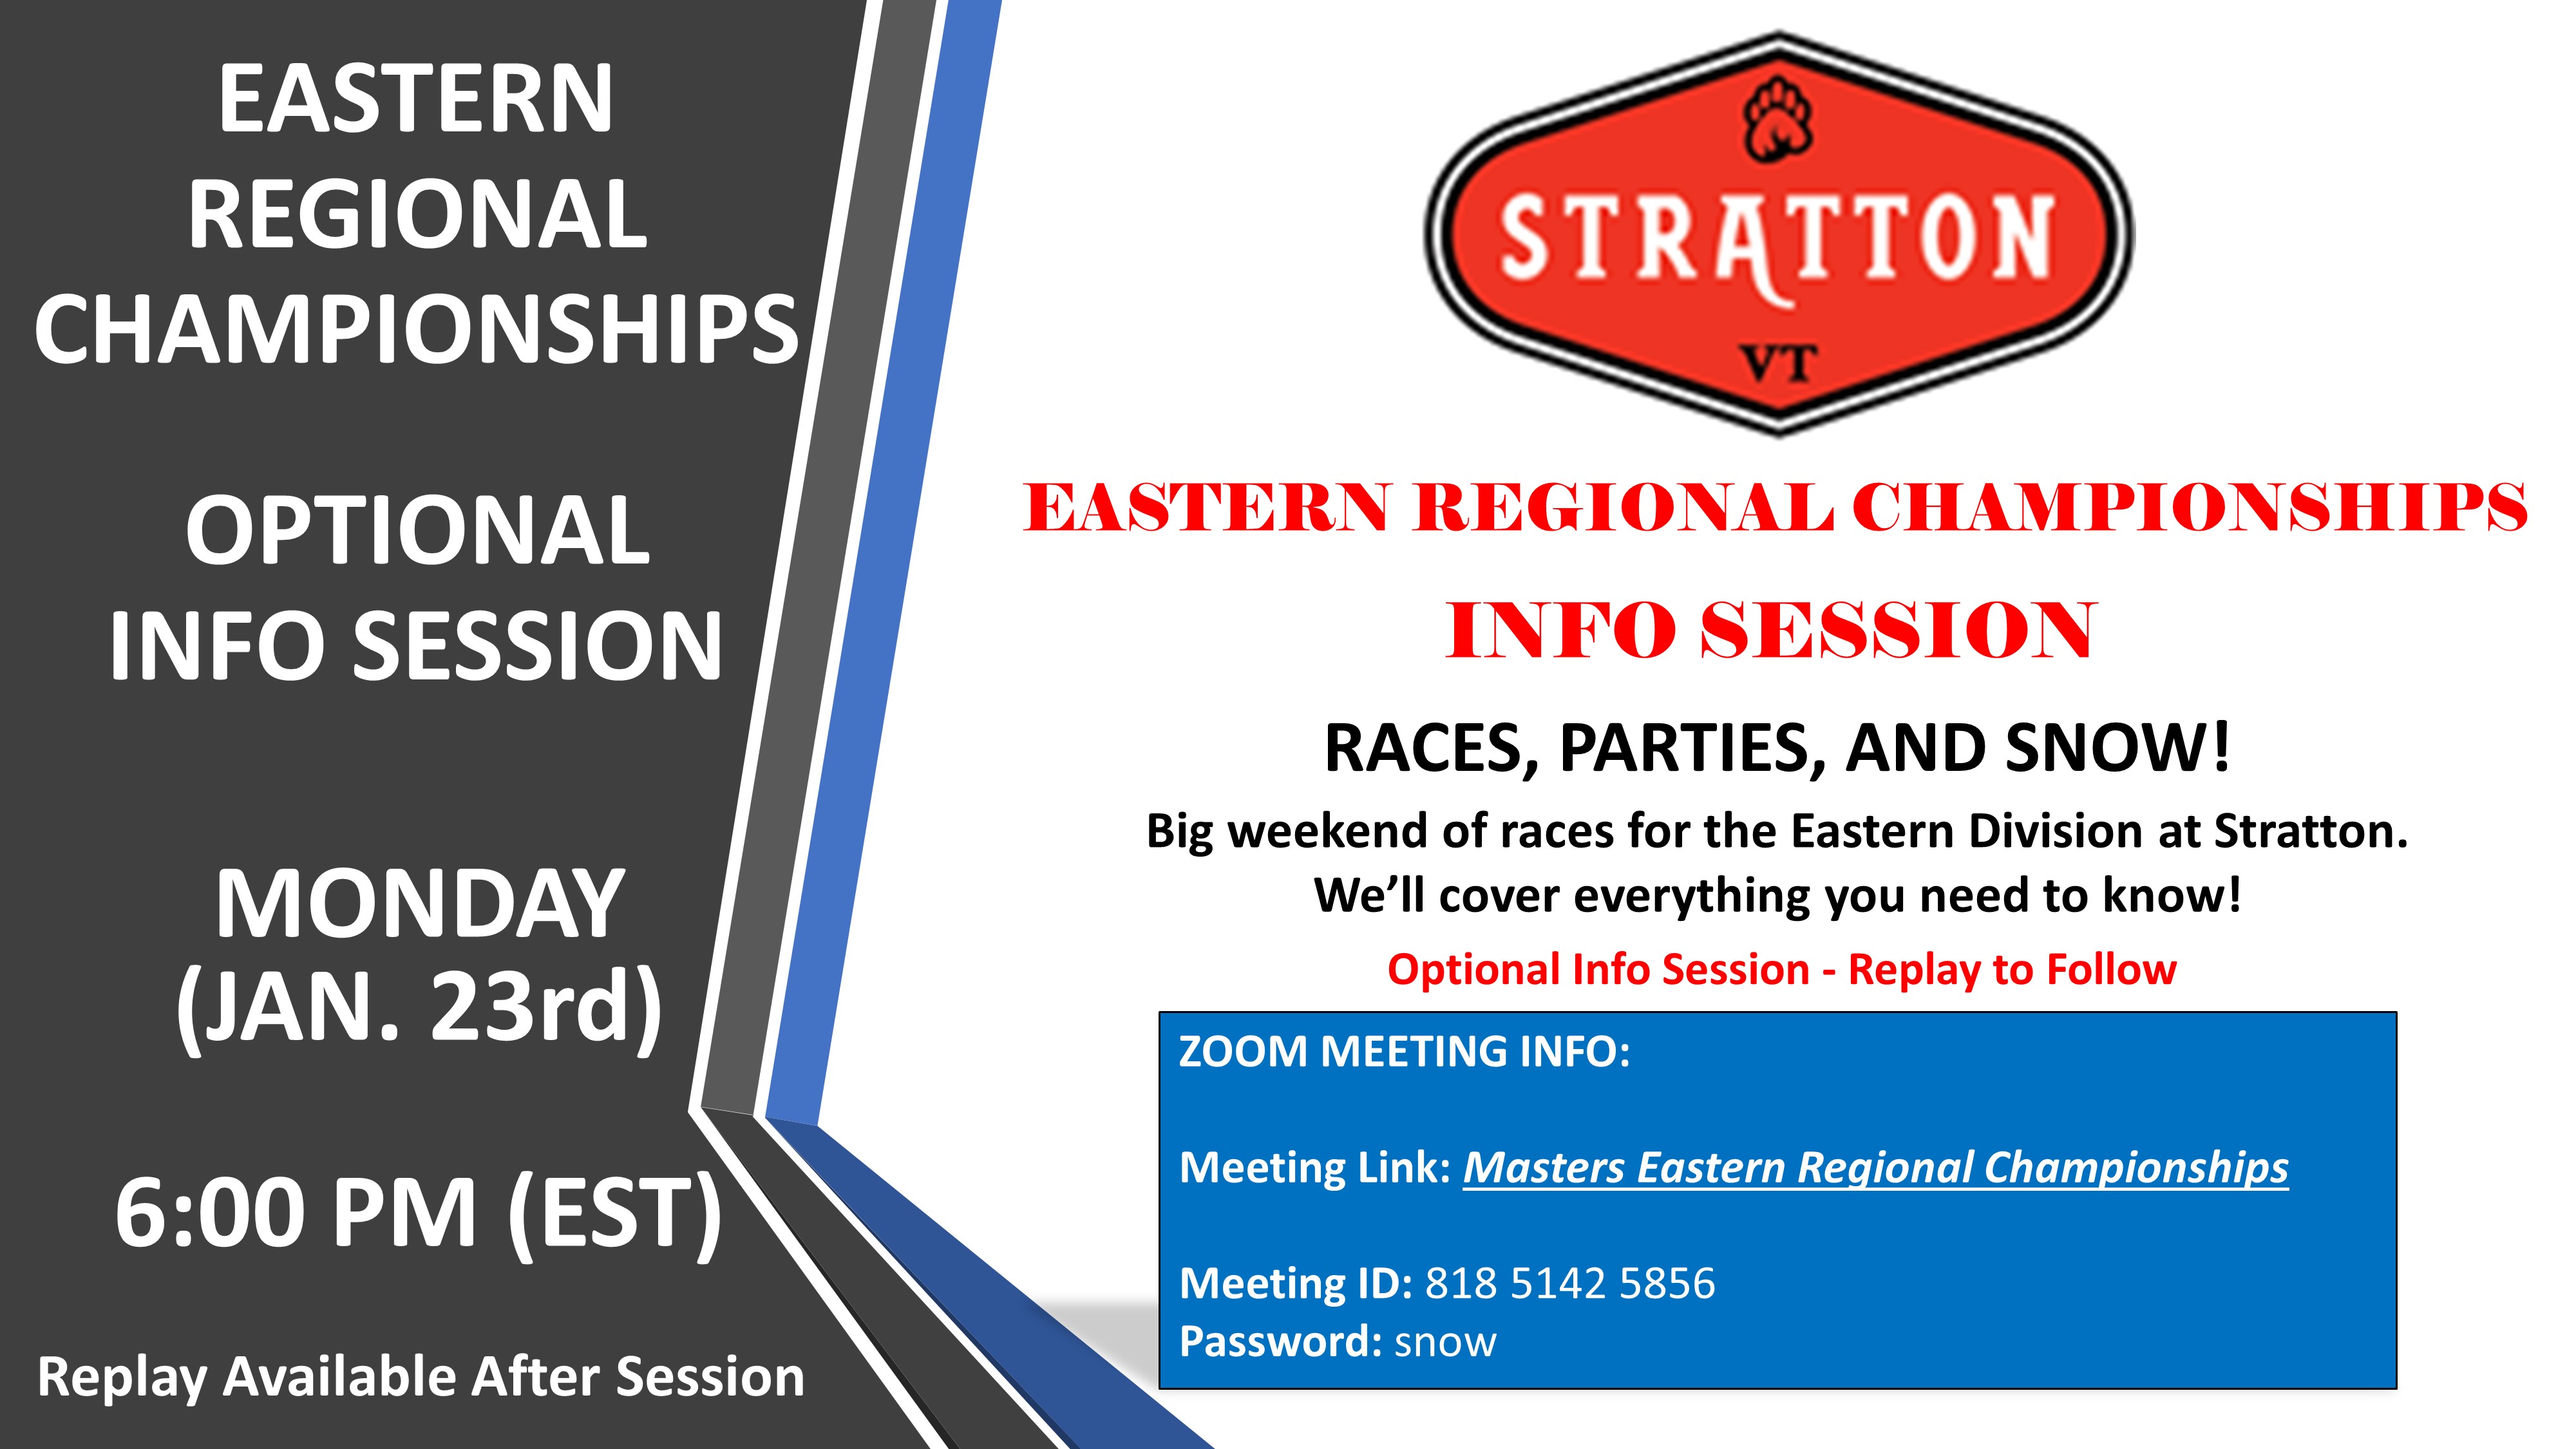 Stratton Info Session